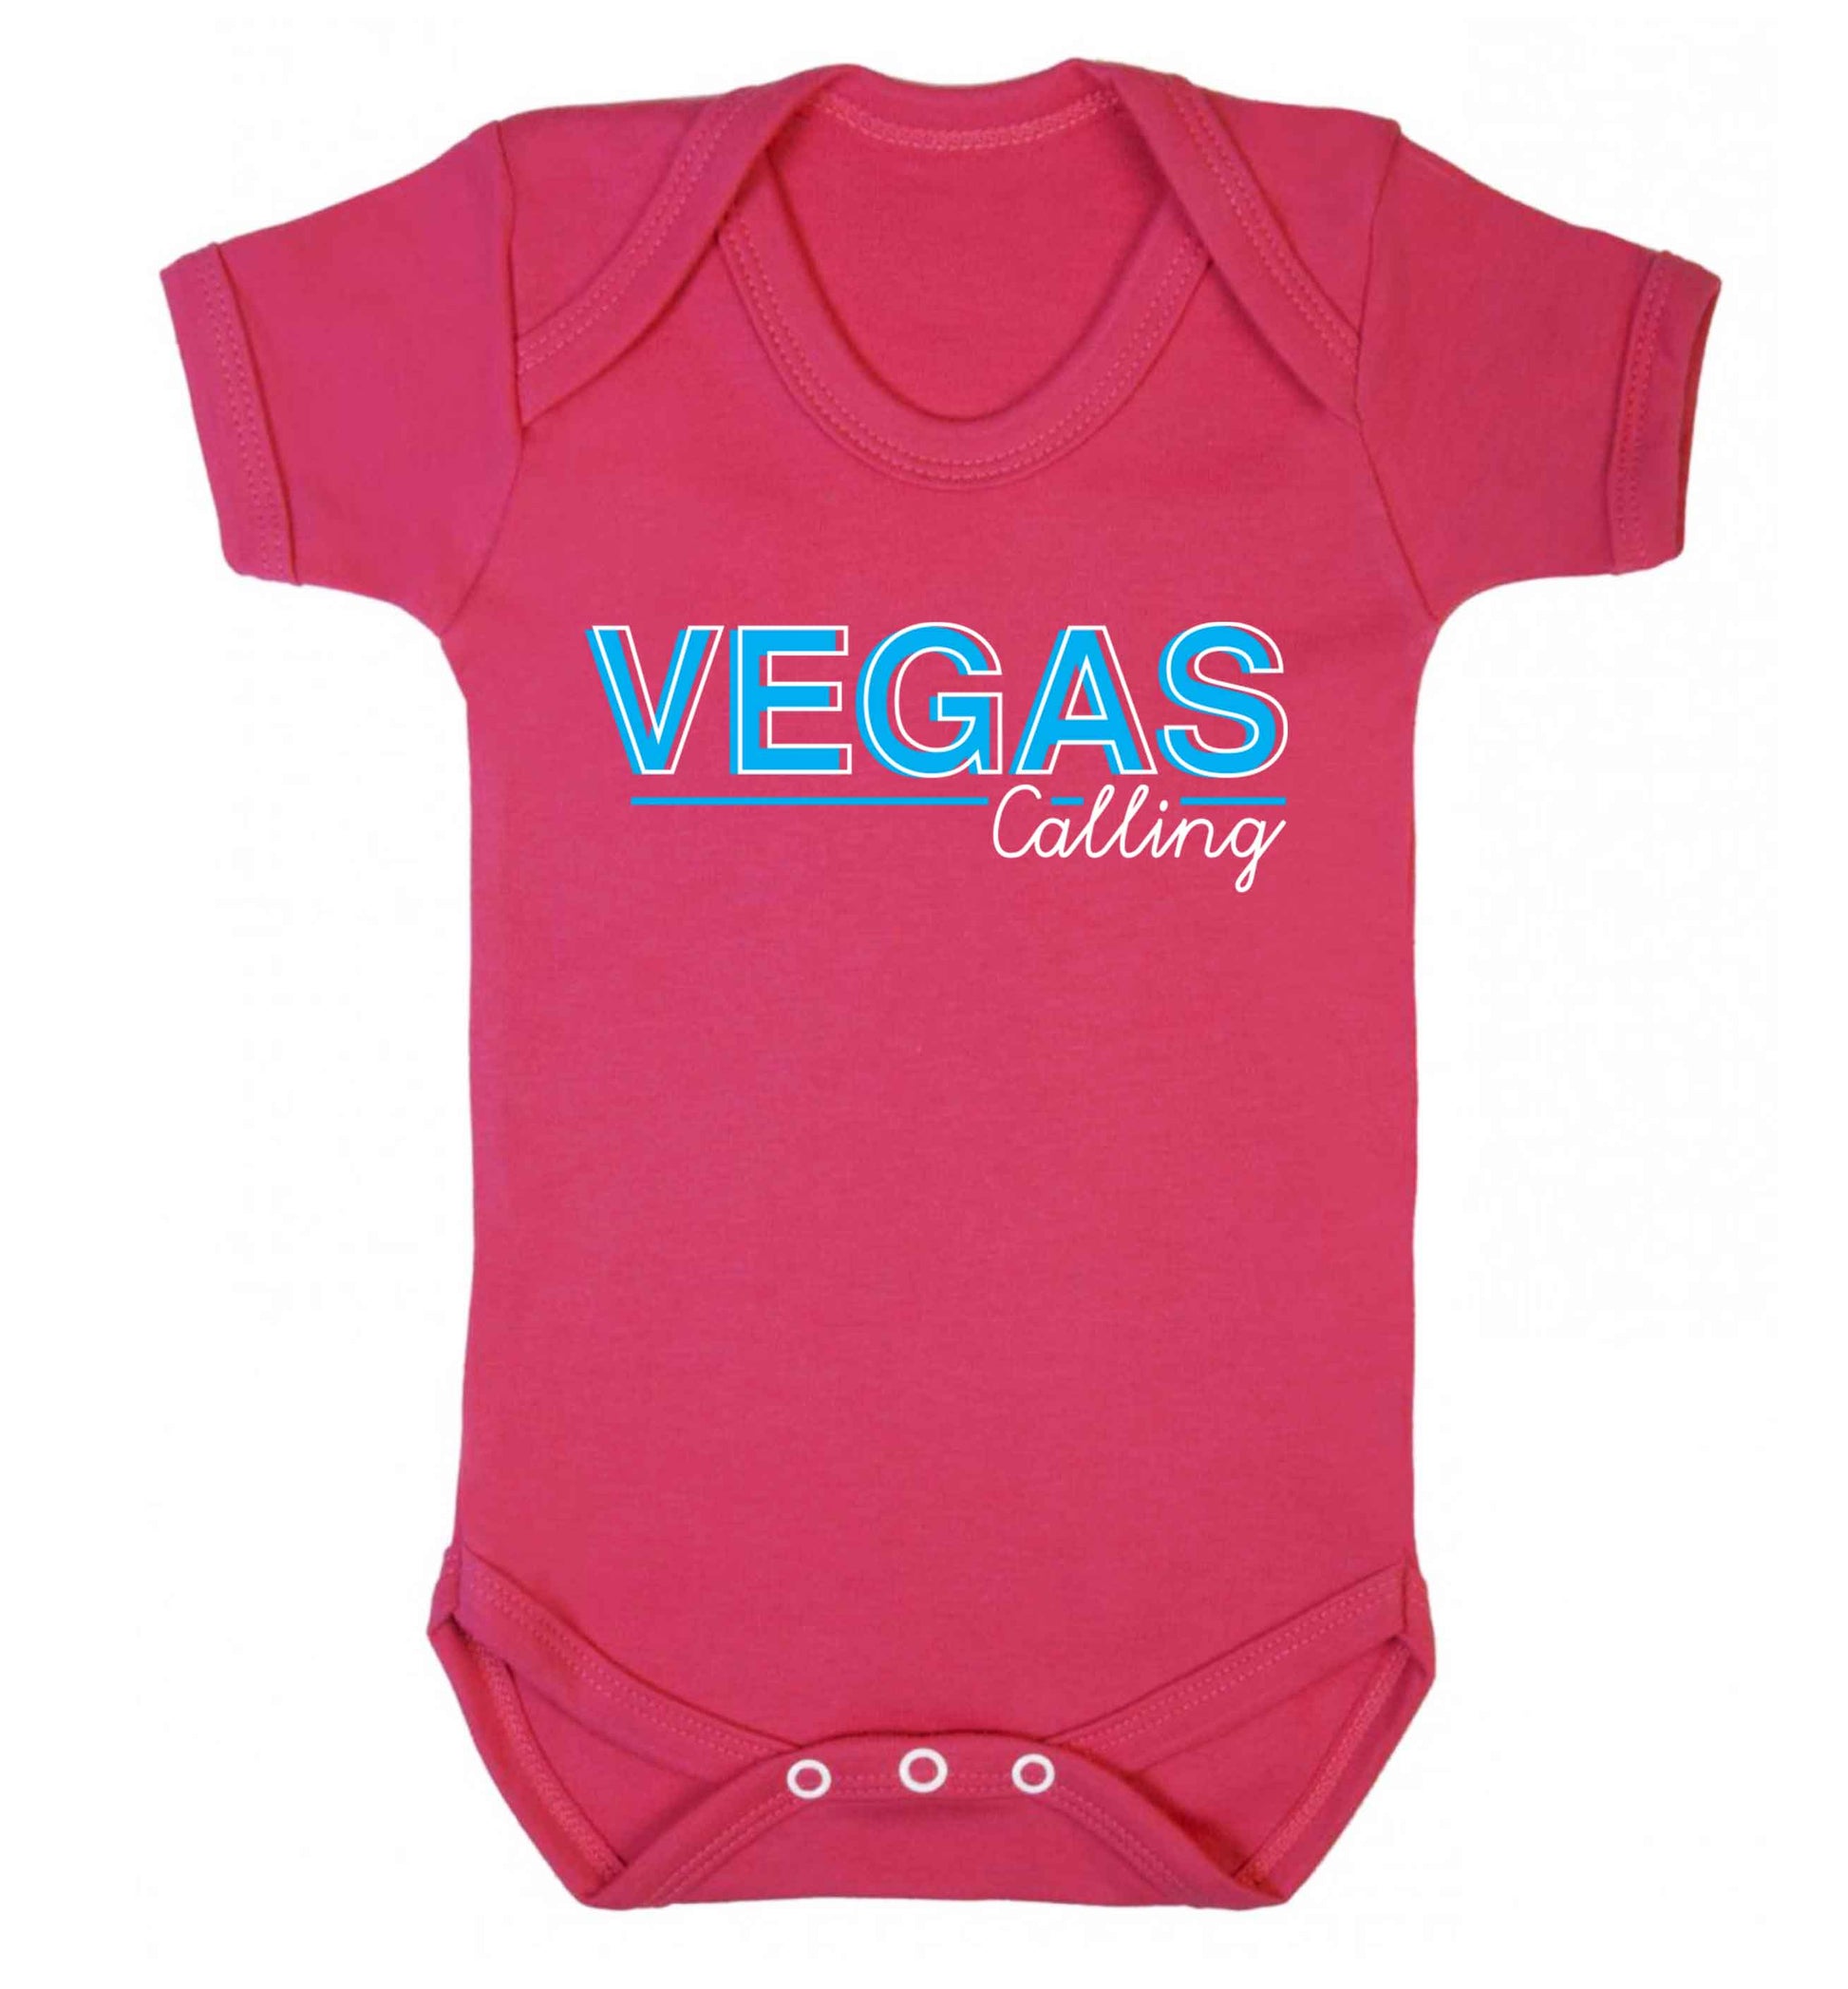 Vegas calling Baby Vest dark pink 18-24 months